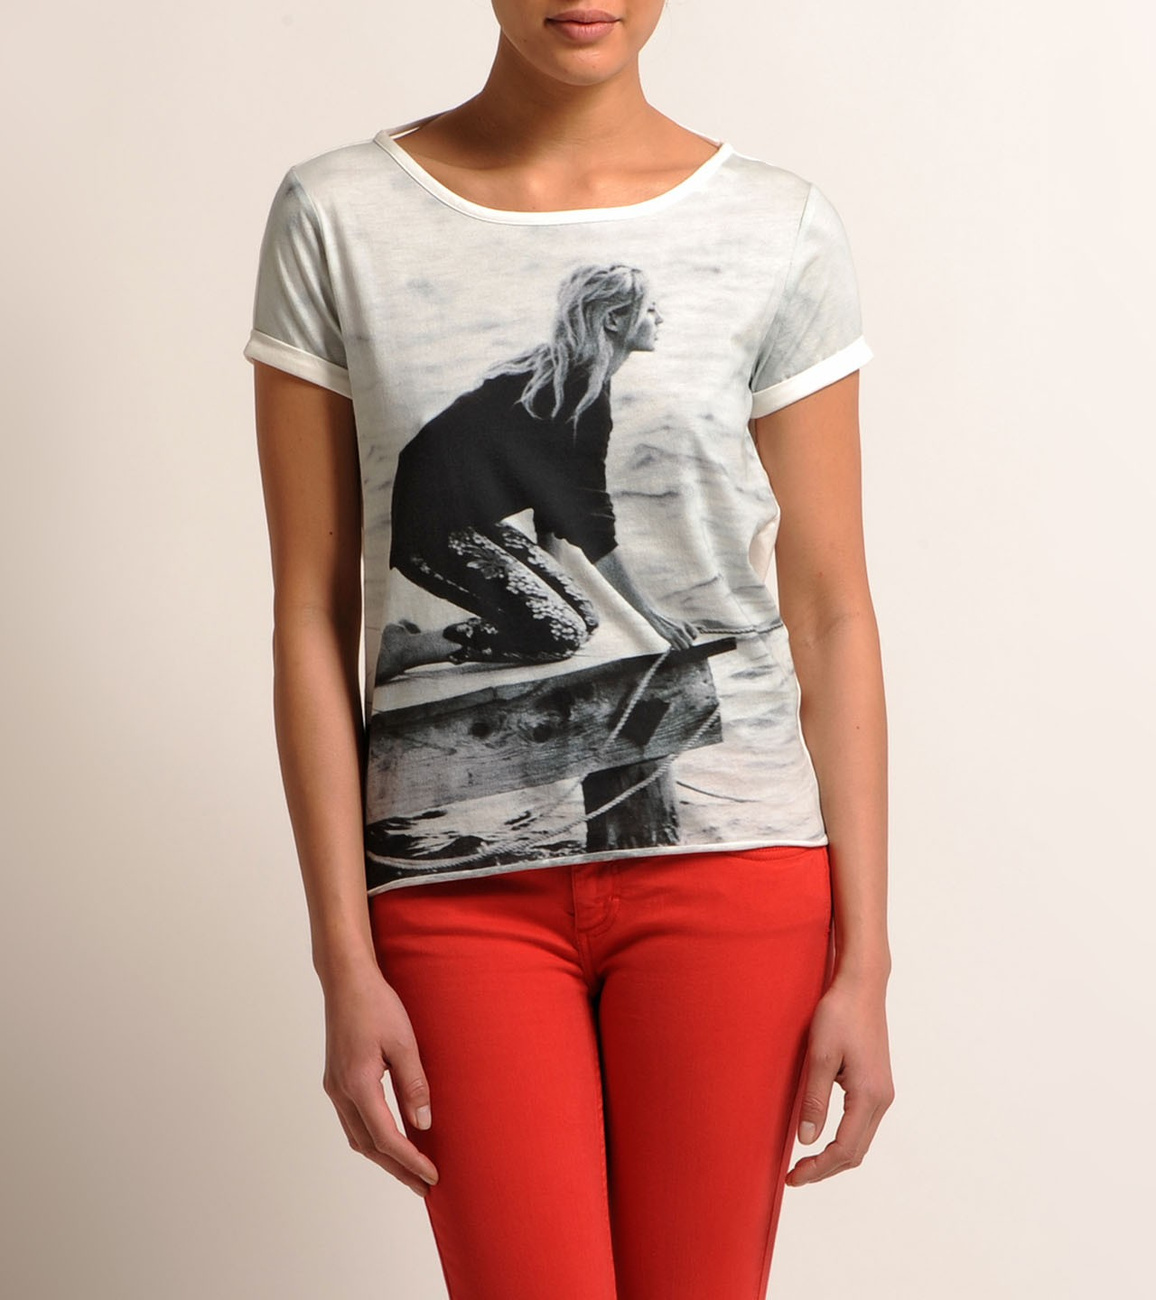 Brigitte Bardot póló a Maje-től 39 700 forintért